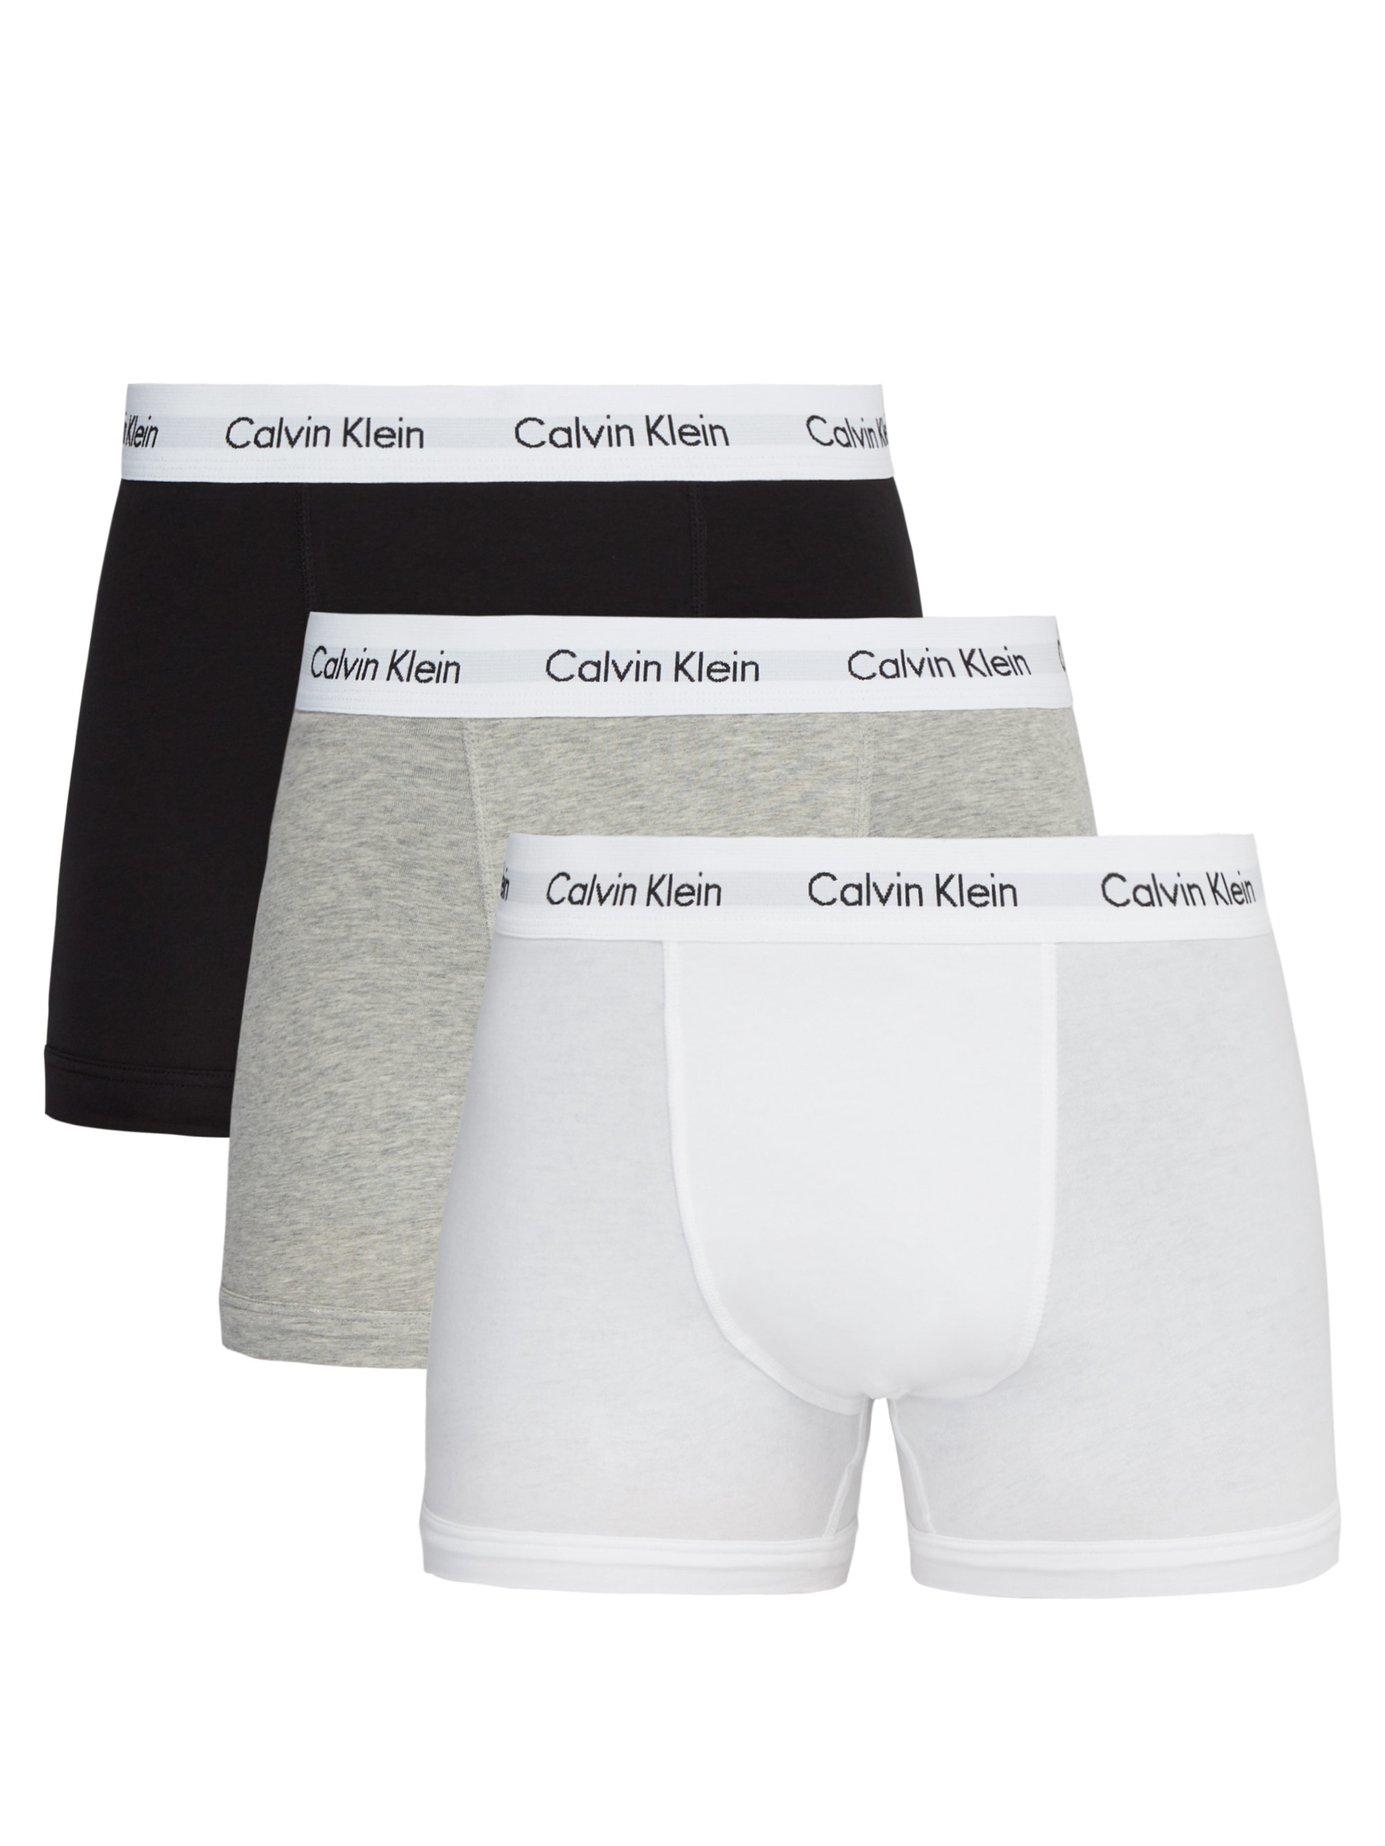 calvin klein boxer briefs or trunks